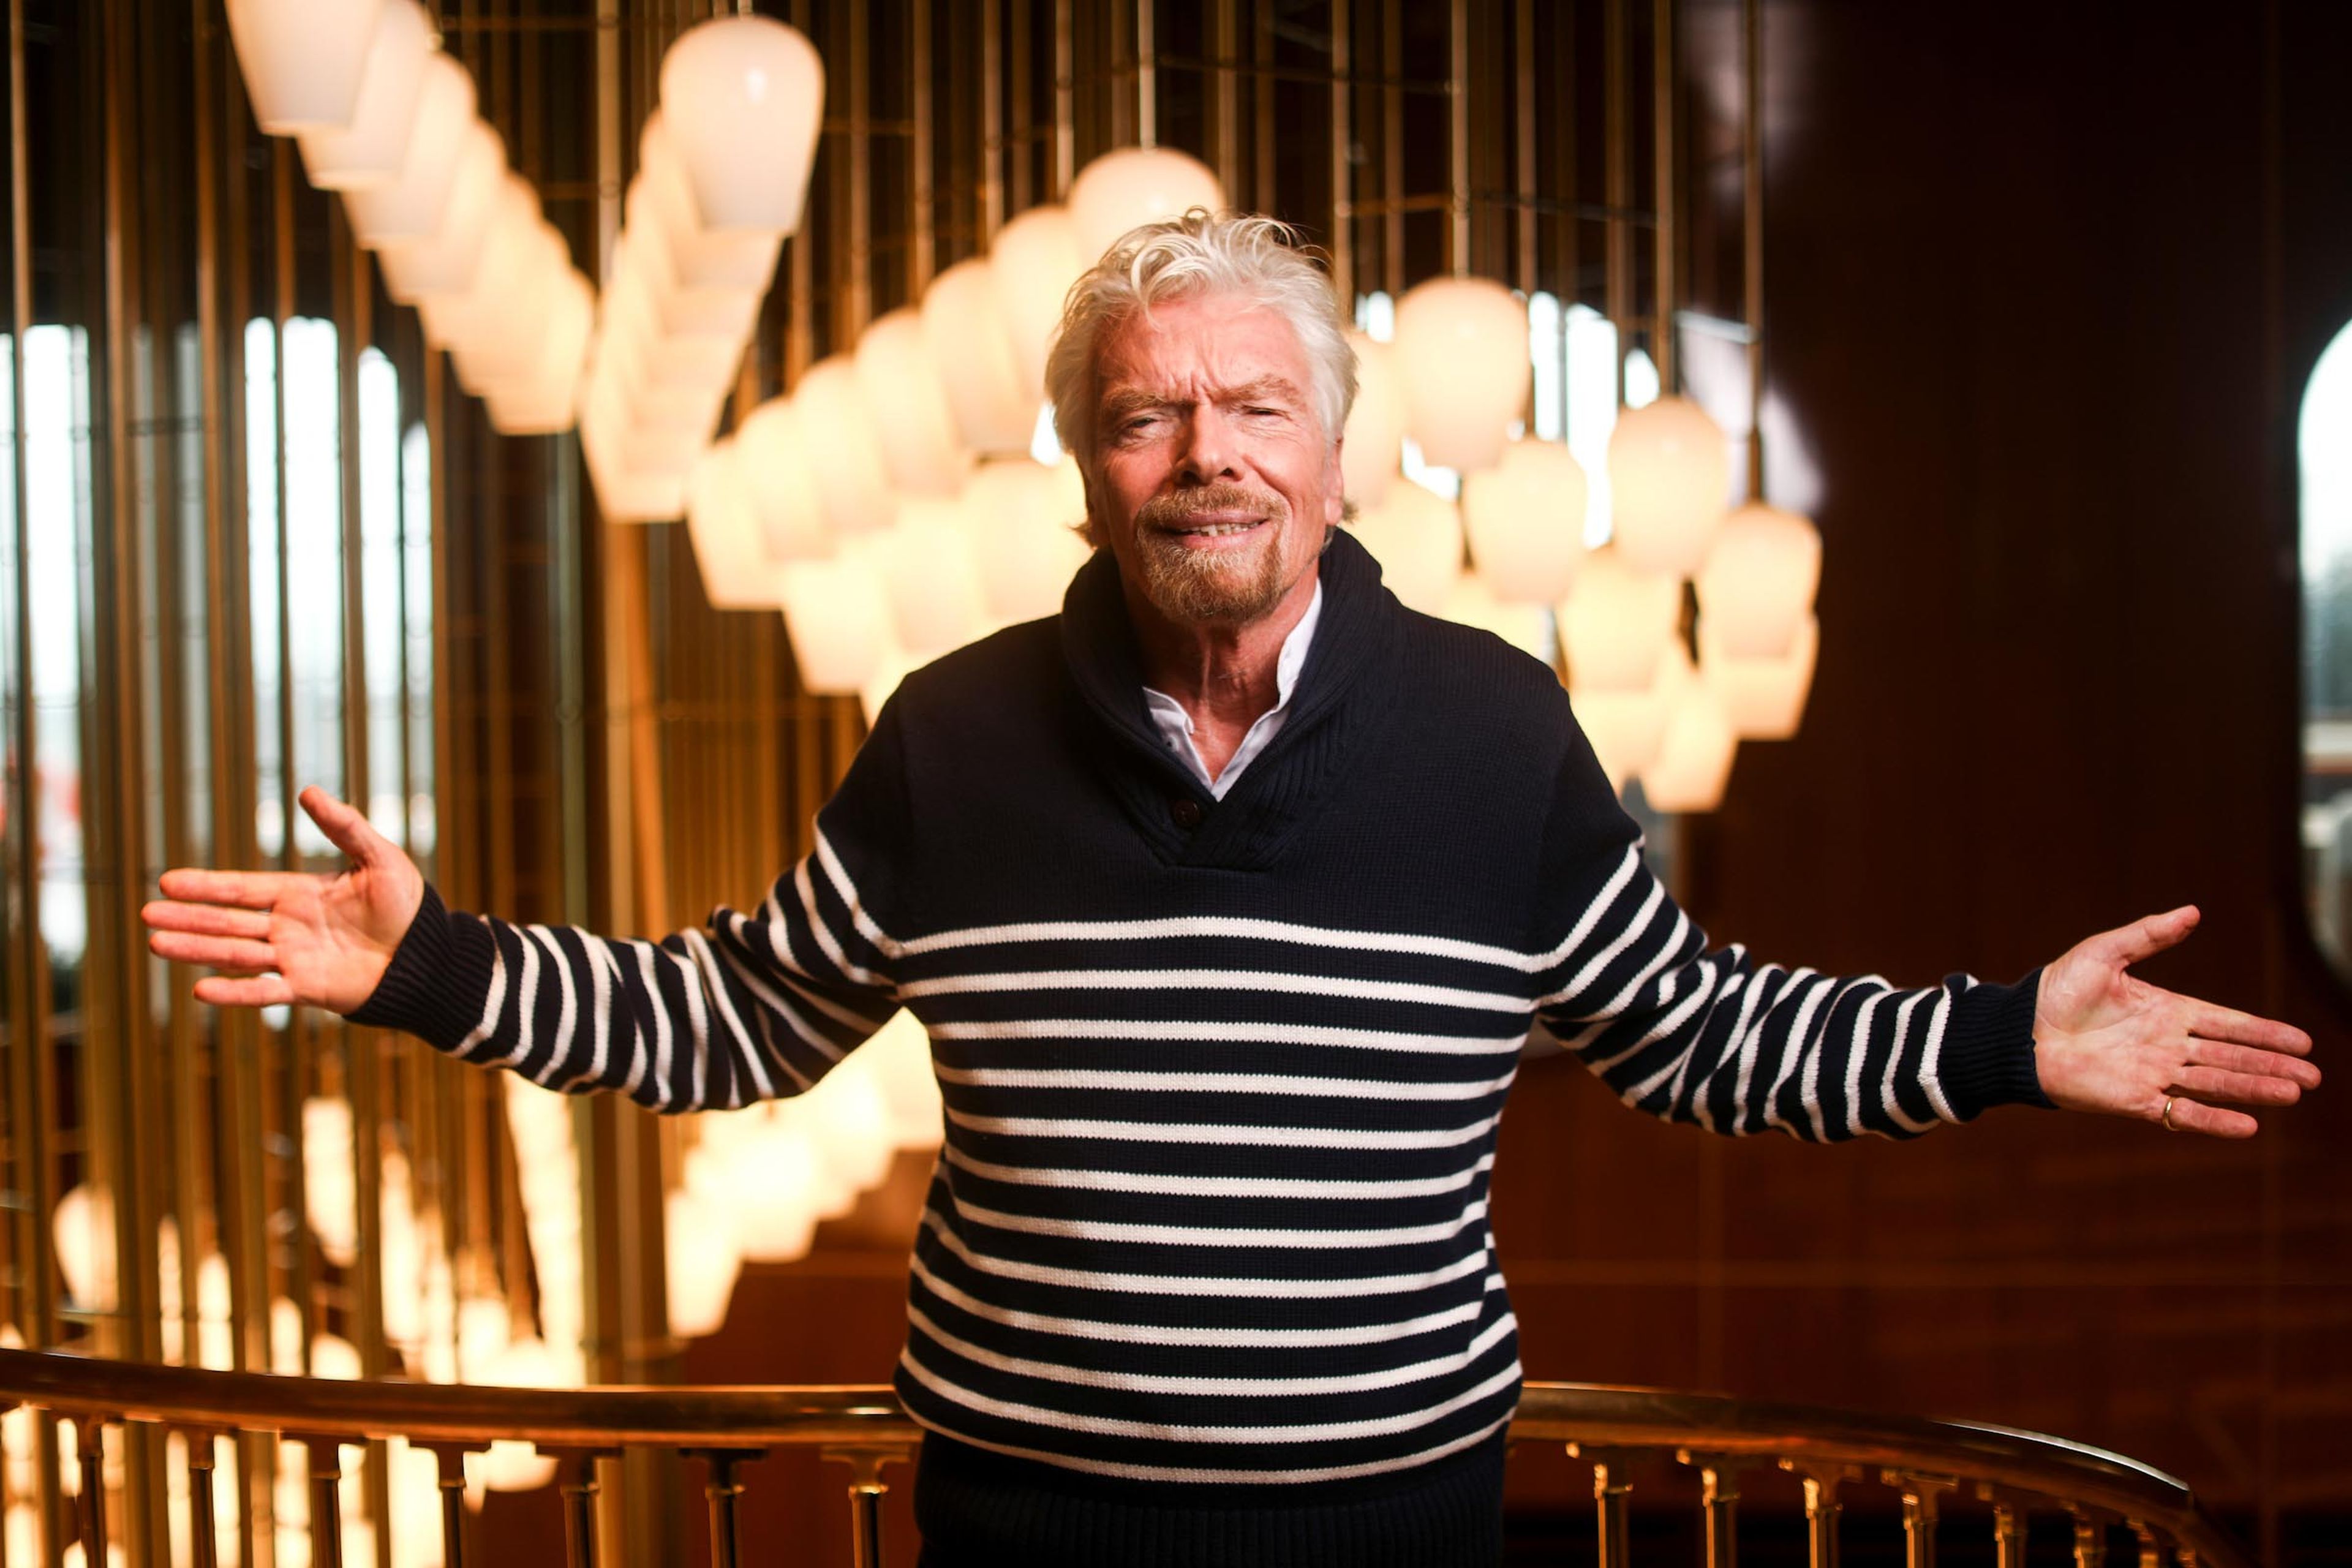 Richard Branson, founder of Virgin Group.